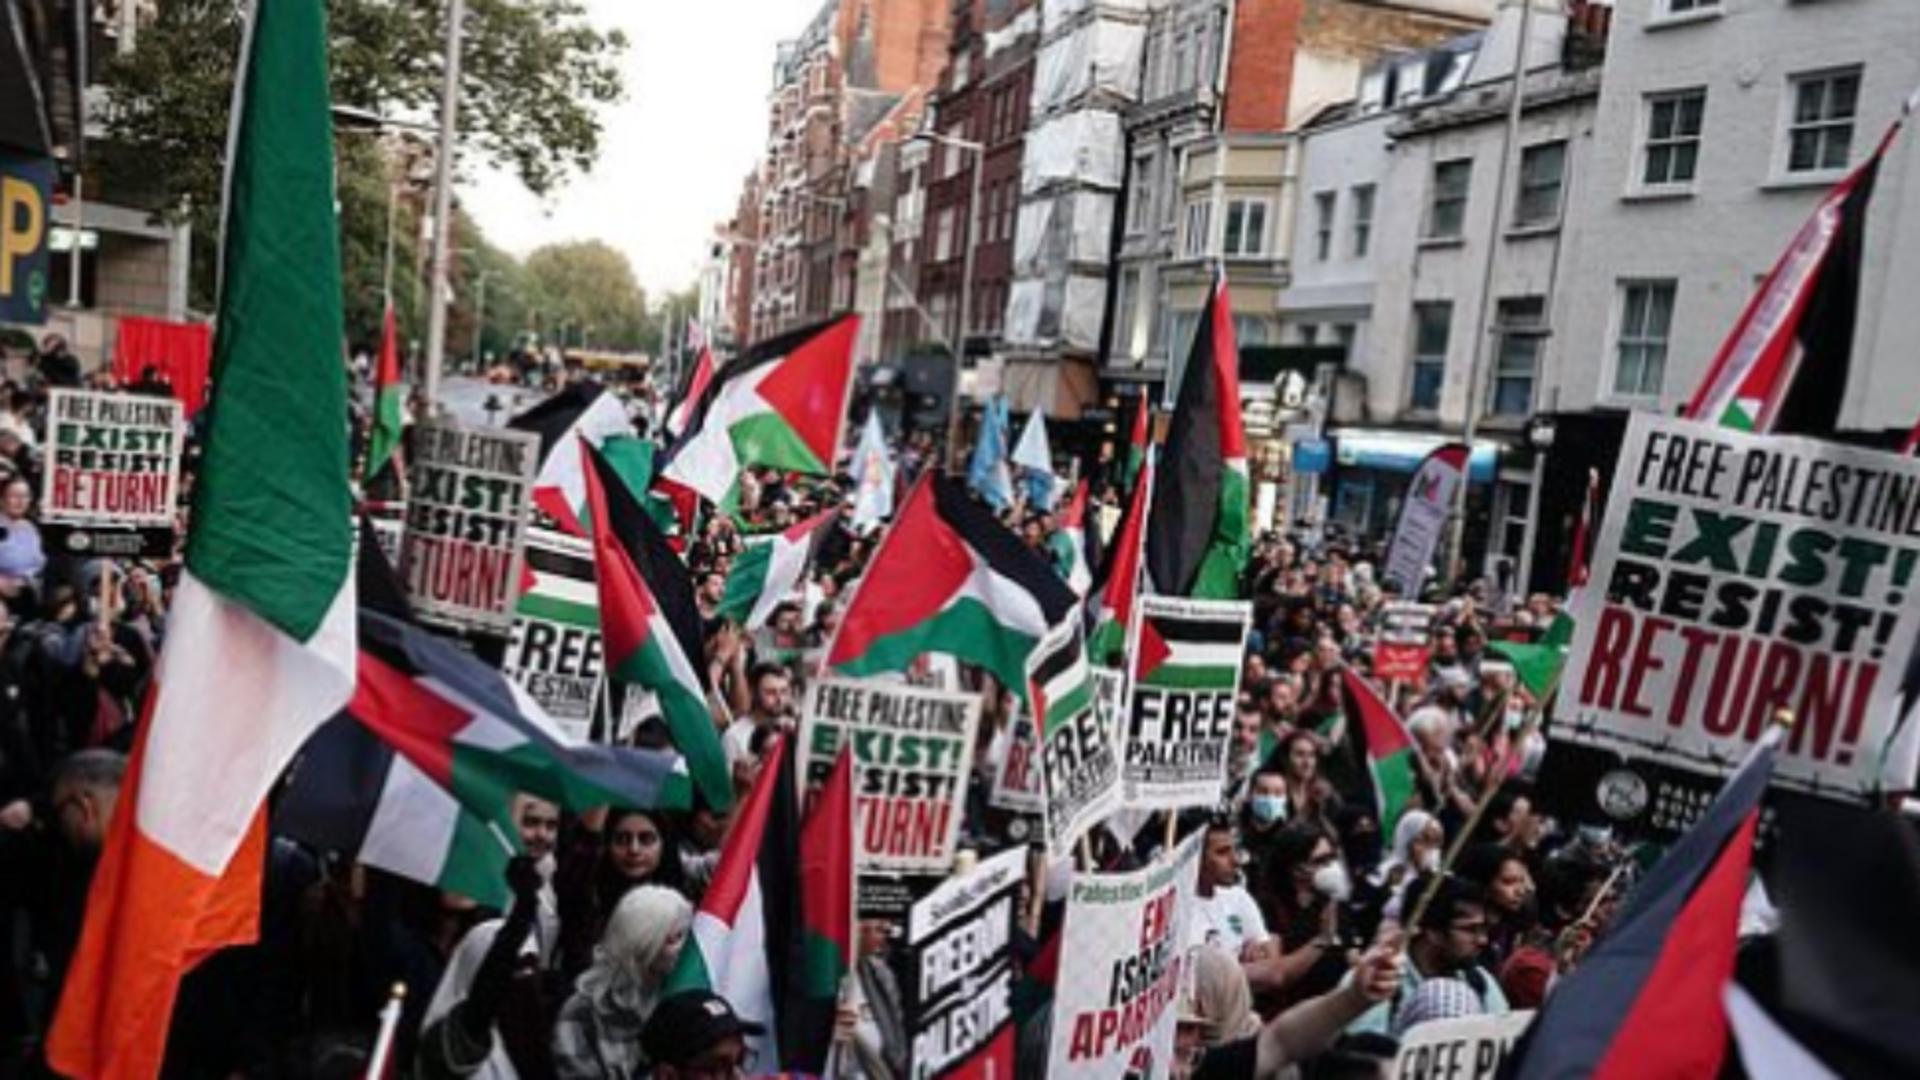 Conflictul din Israel a ajuns în Europa. Ciocniri violente între palestinieni și israelieni, la Londra – VIDEO